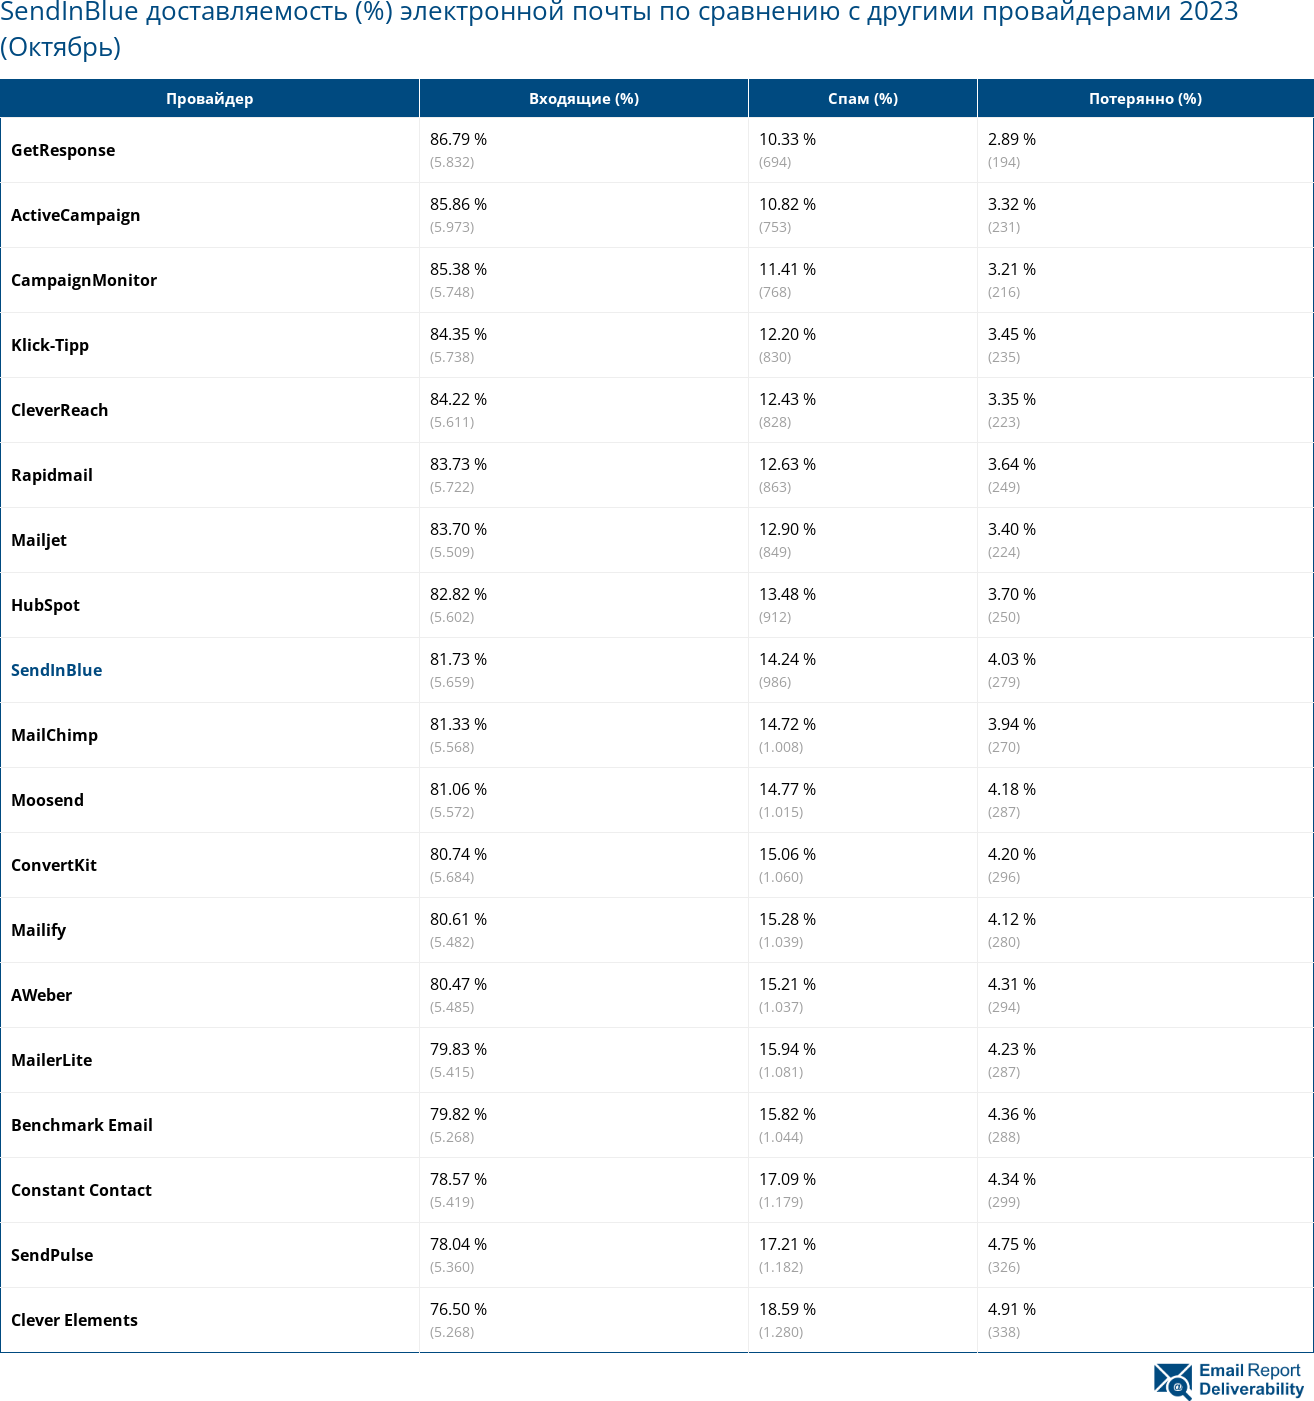 SendInBlue доставляемость (%) электронной почты по сравнению с другими провайдерами 2023 (Октябрь)